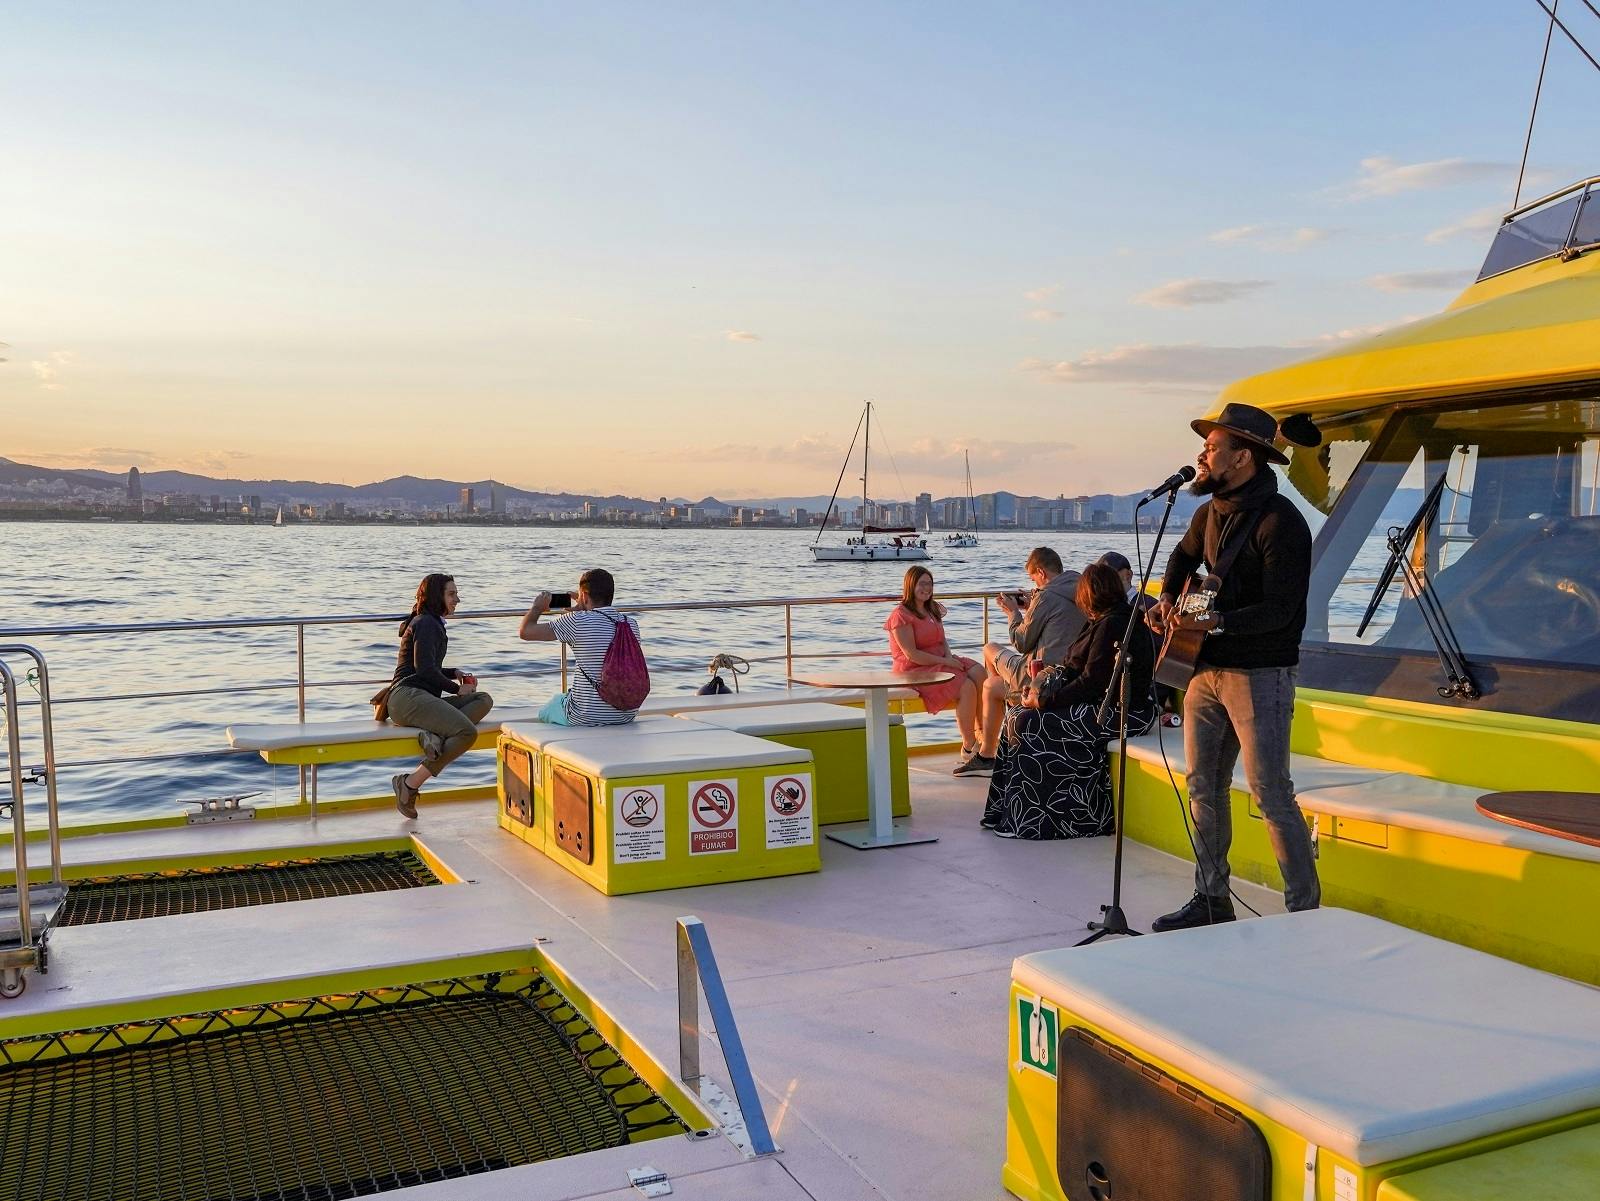 Passeio ecológico de catamarã em Barcelona ao pôr do sol com música ao vivo